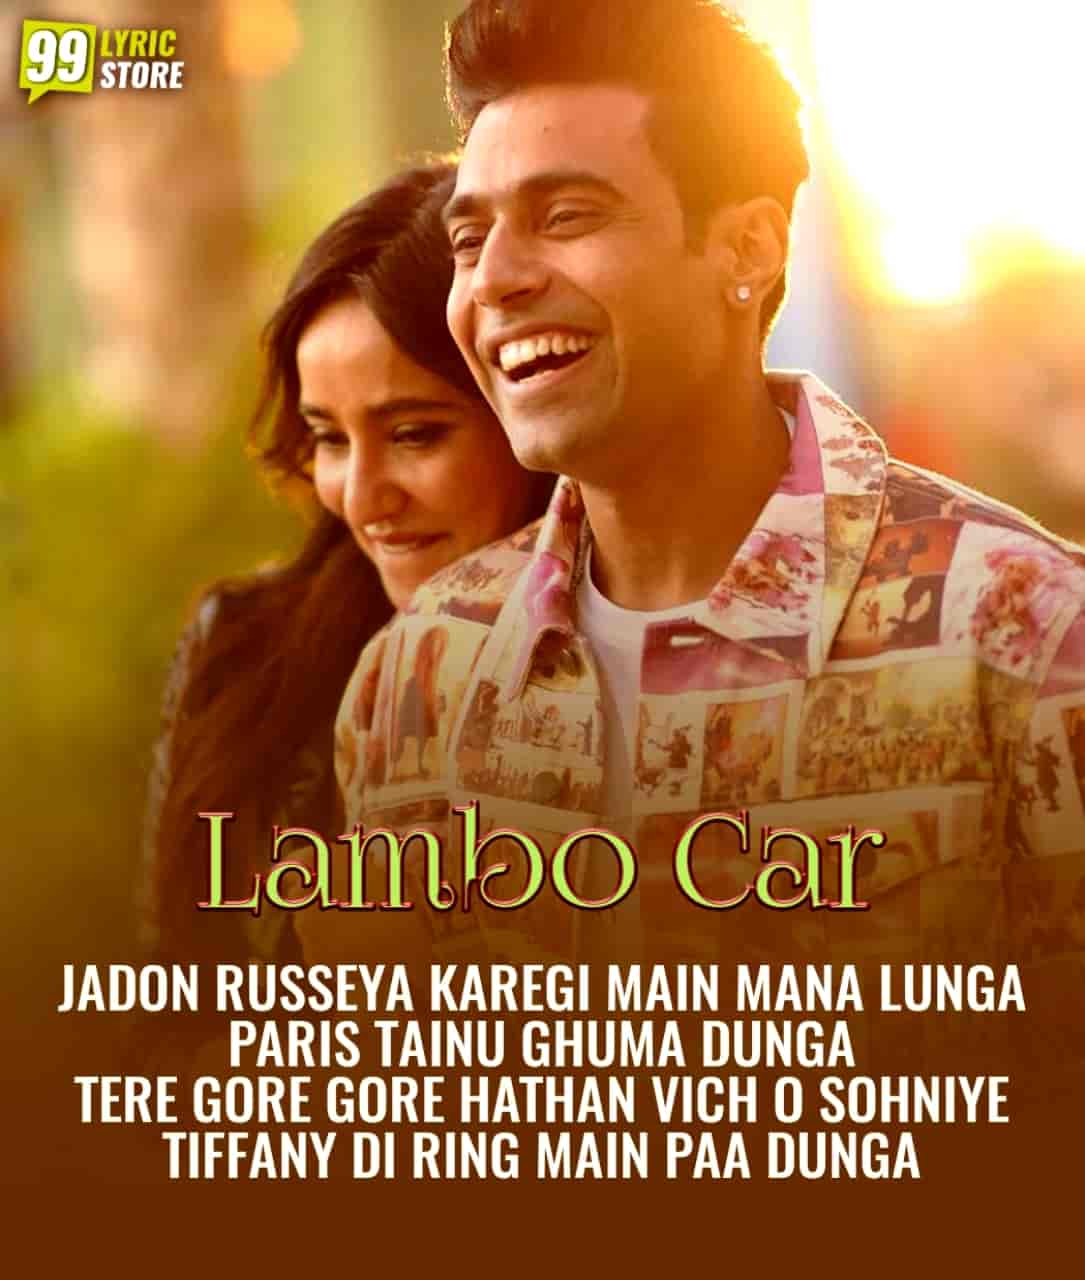 Lambo Car cute punjabi song image features Guri and Neha Sharma